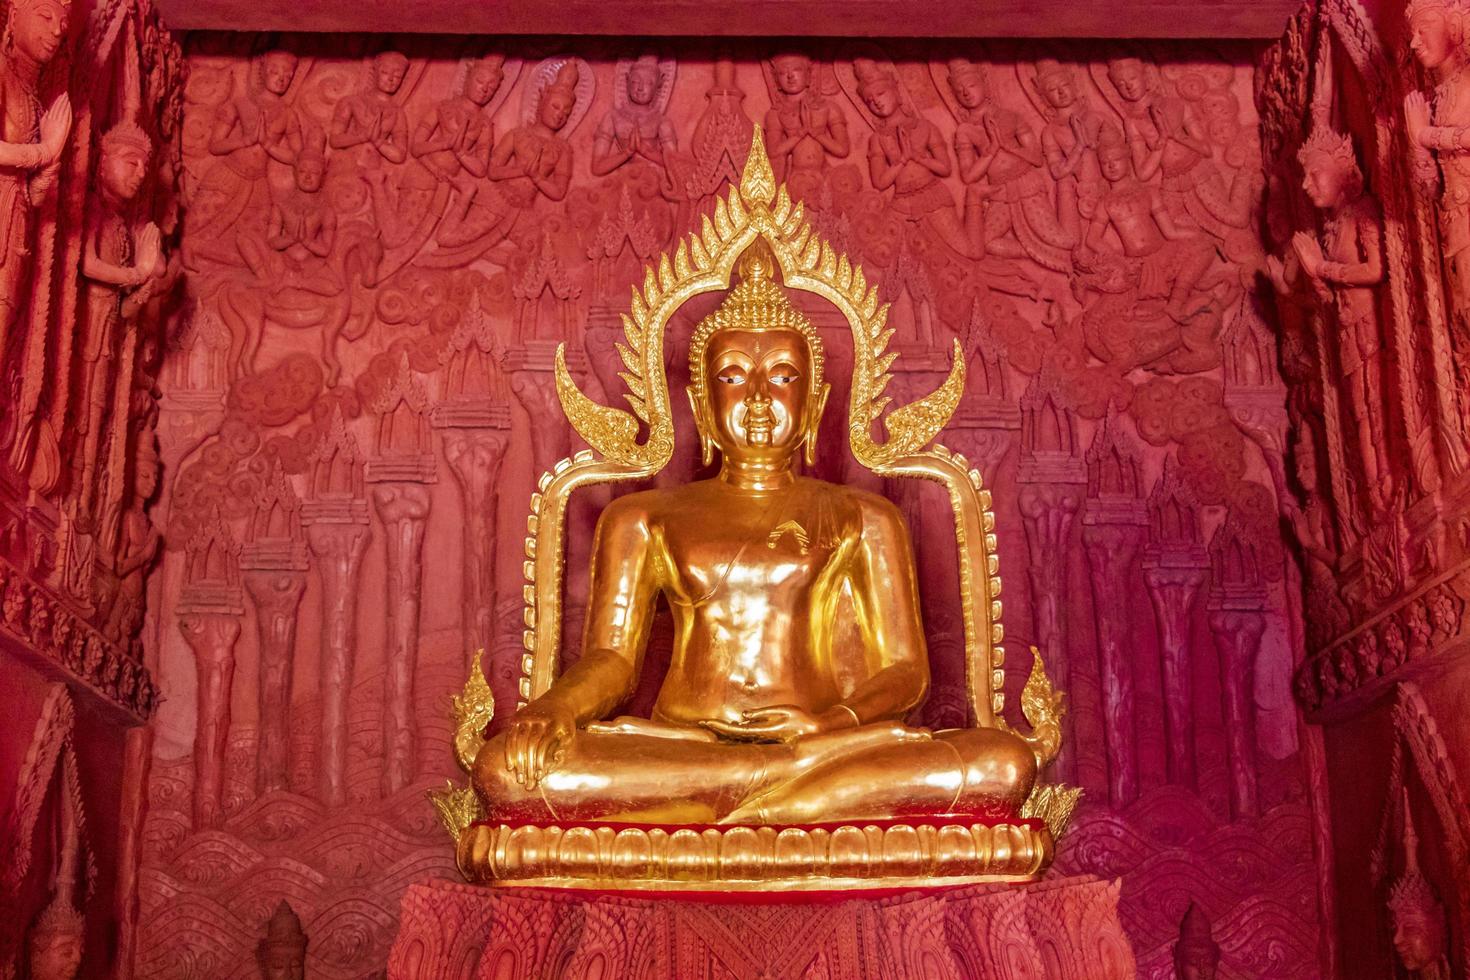 bouddha doré à wat sila ngu, le temple rouge, sur koh samui, thaïlande photo